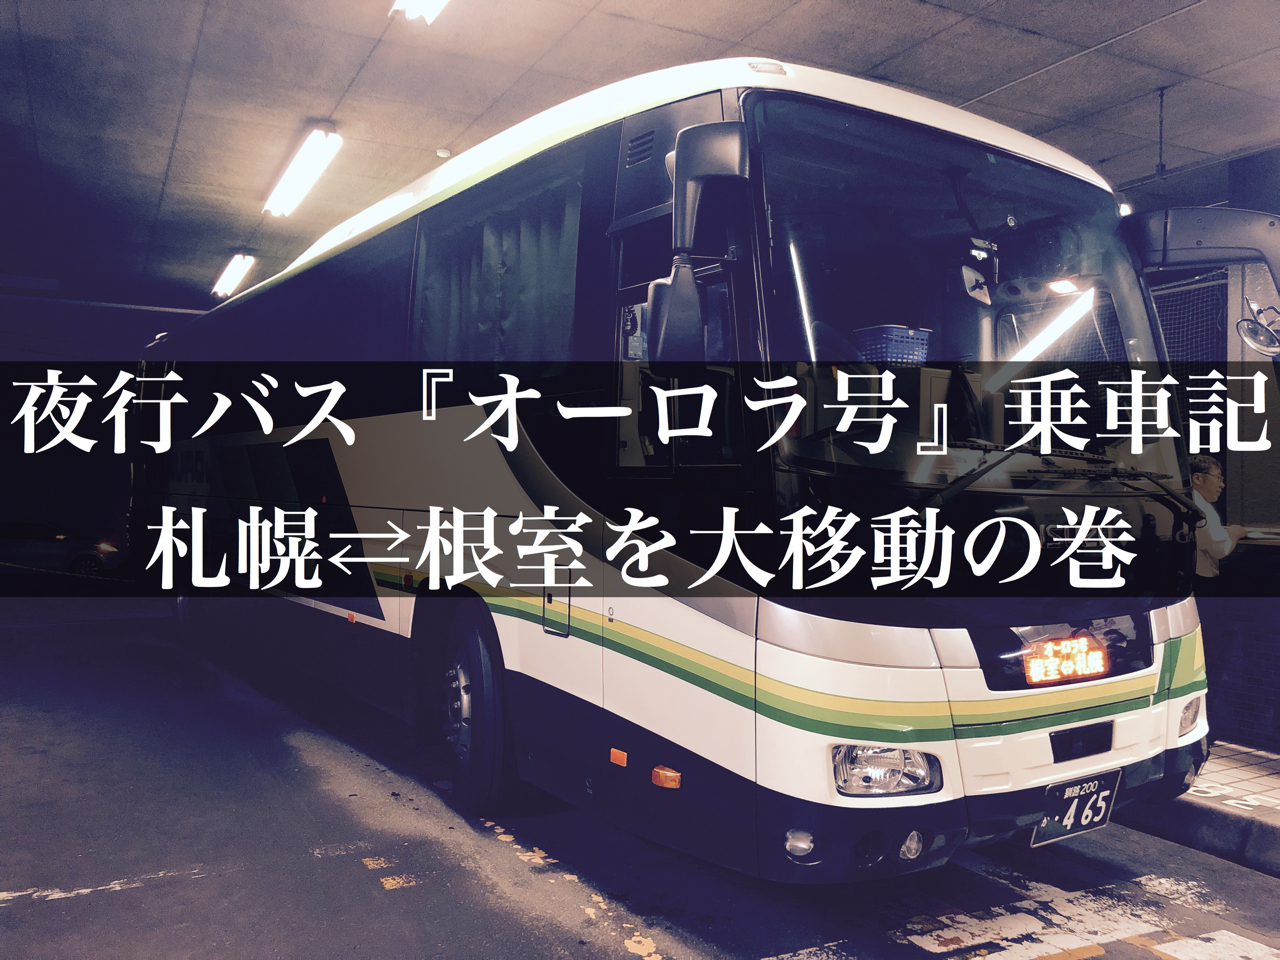 乗車記】観光で利用するなら経由便がおすすめ‼︎『オーロラ号』で札幌 